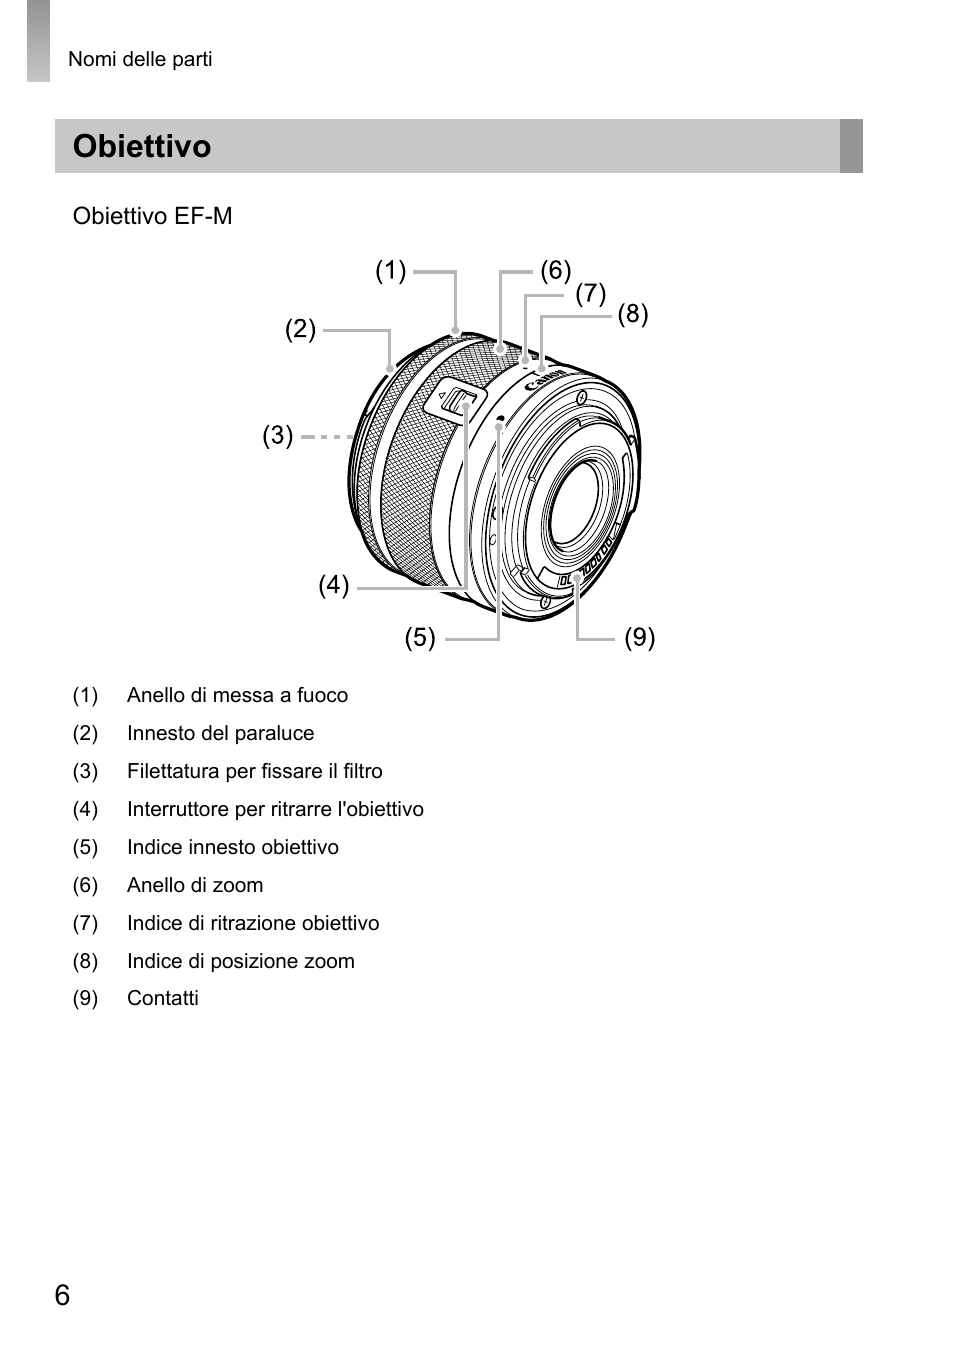 Obiettivo | Canon EOS M10 Manuale d'uso | Pagina 6 / 21